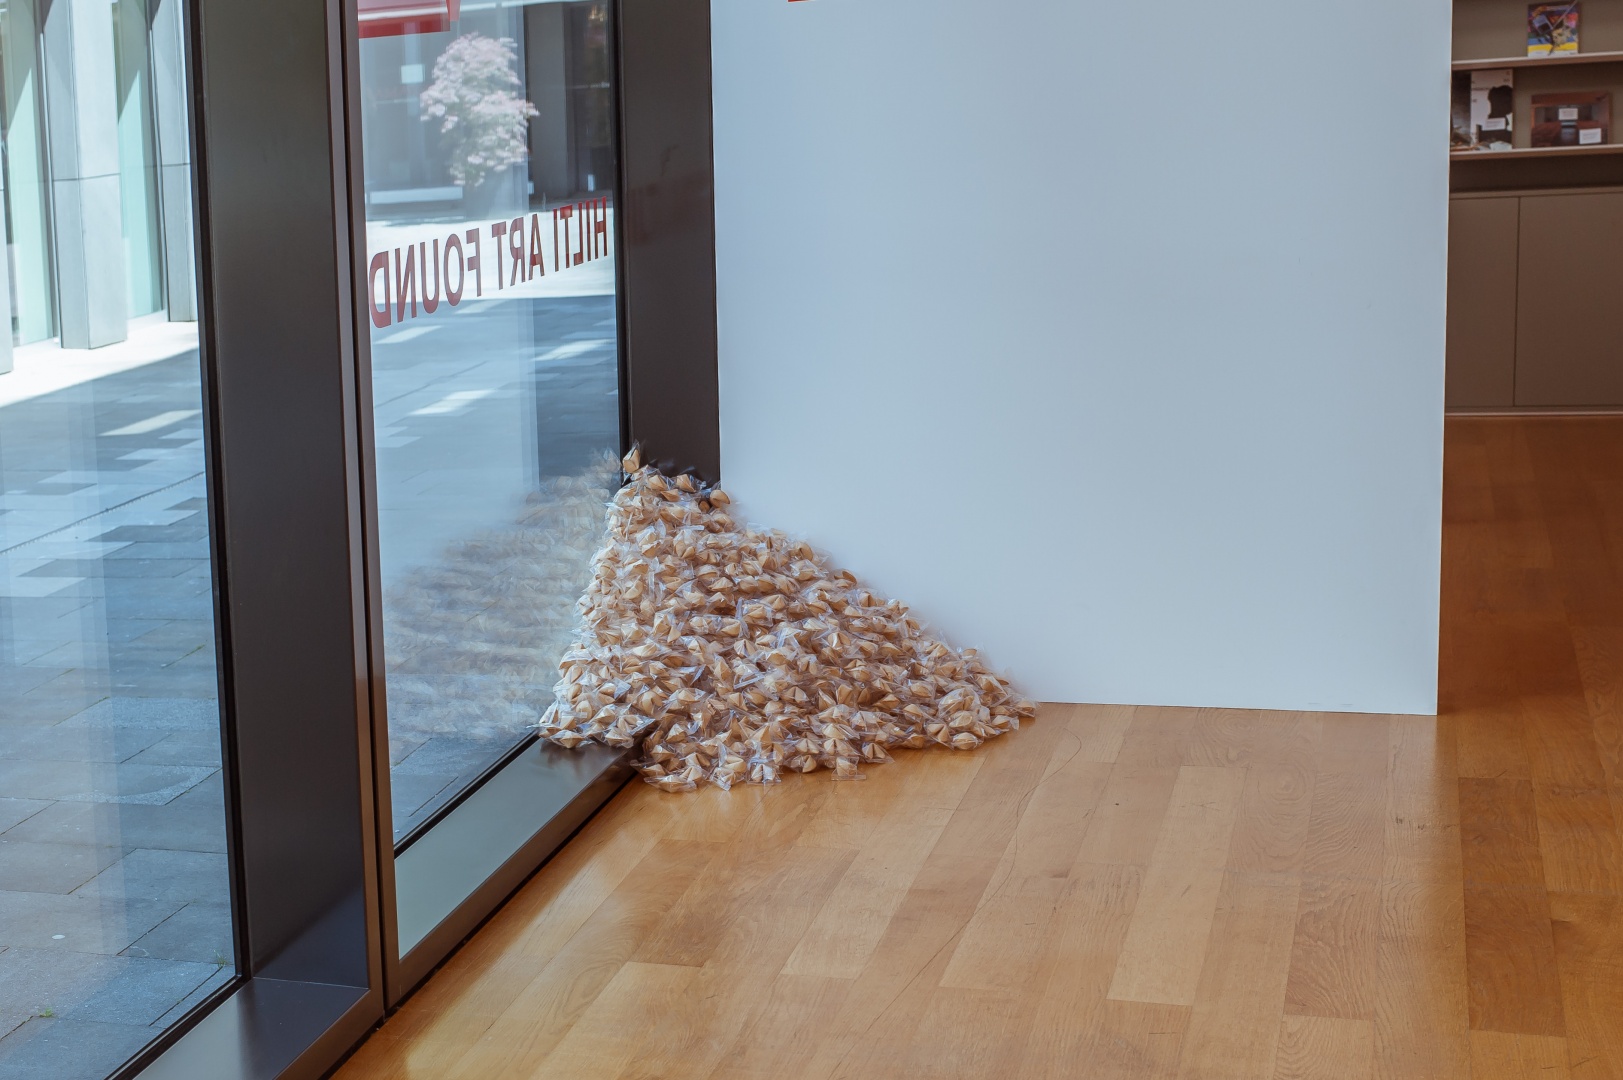 Felix Gonzalez-Torres, Untitled (Fortune Cookie Corner), 1990